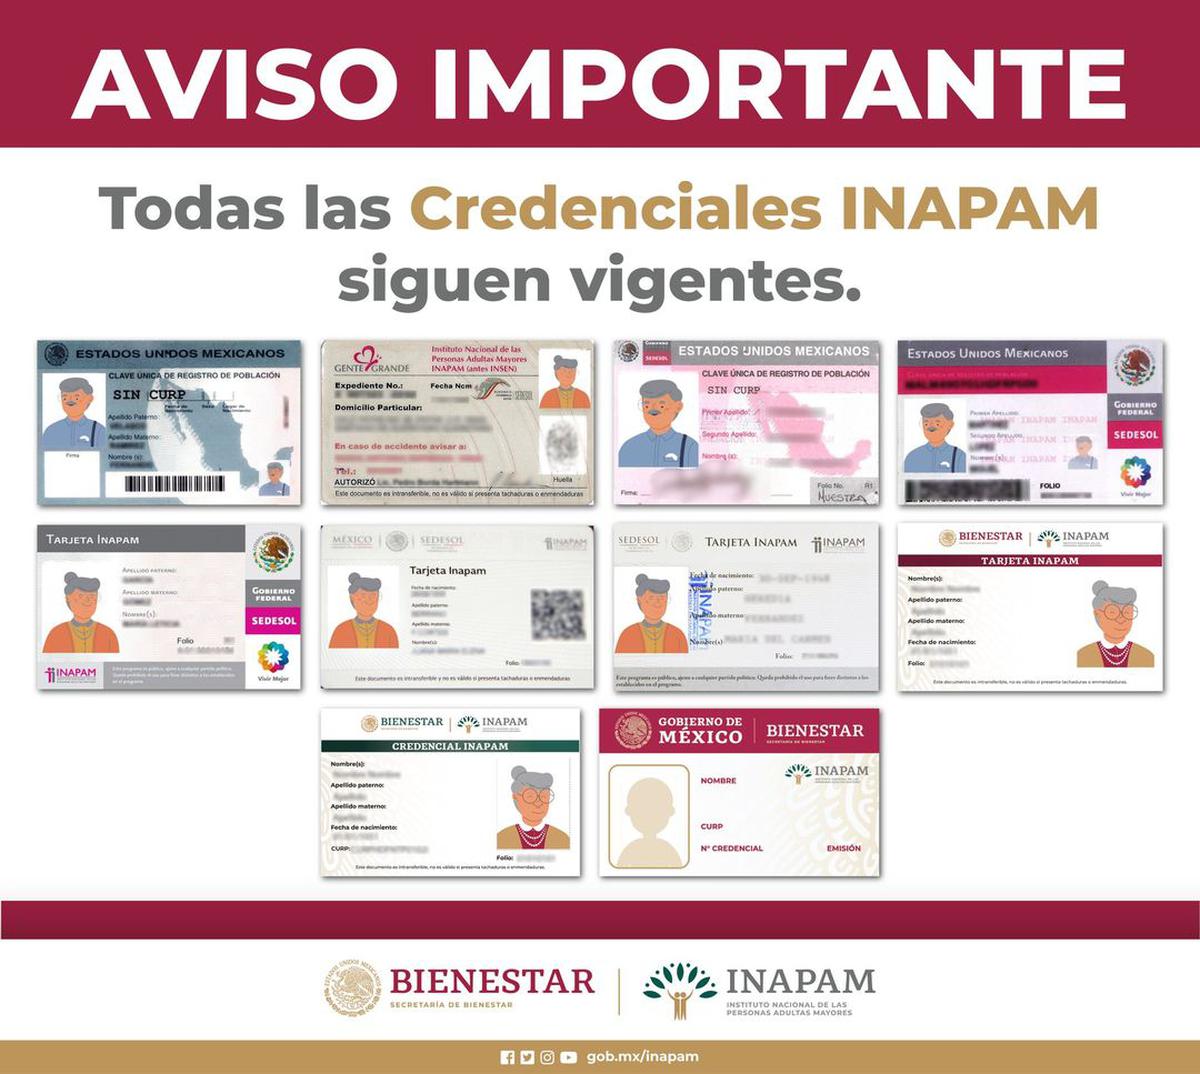 Seguridad garantizada | Todas las credenciales INAPAM son válidas y verificadas. Fuente: Instagram @inapam_bienestar